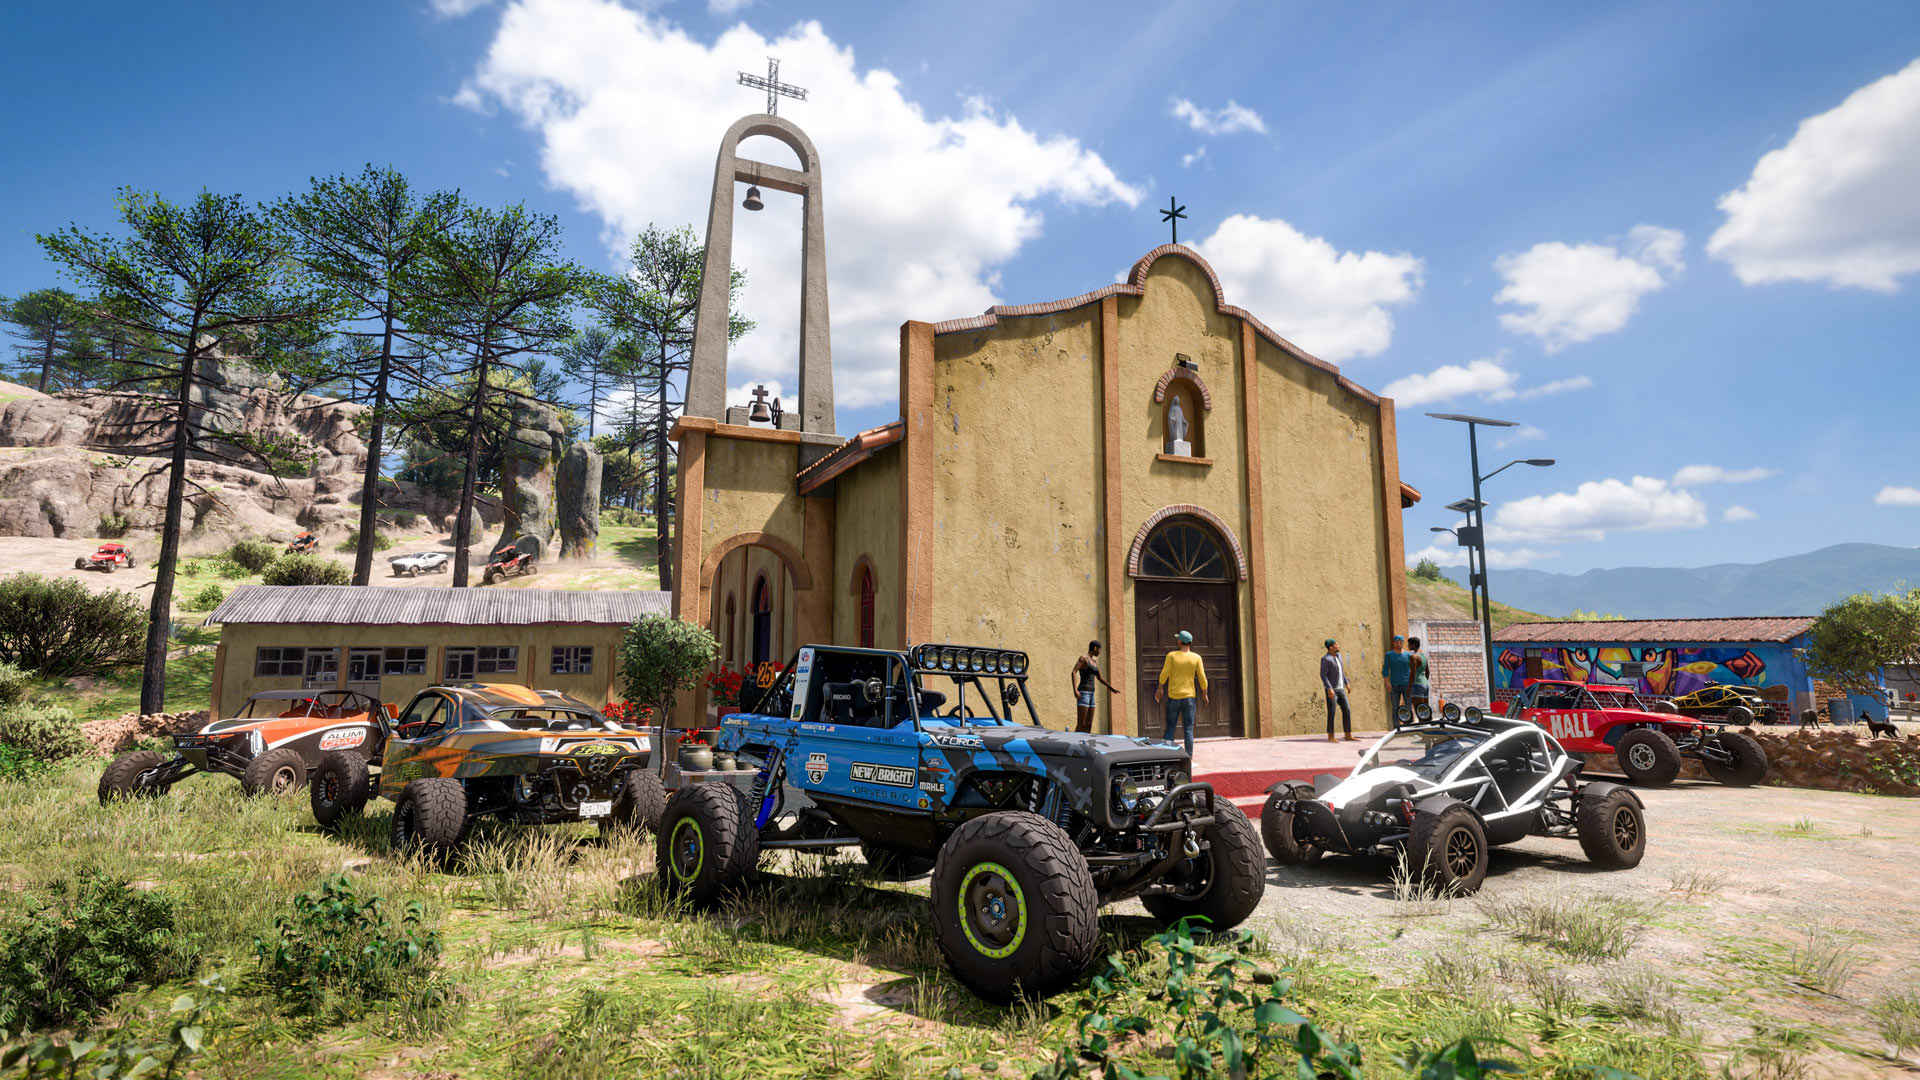 ملاقات ماشین در مقابل کلیسایی در مکزیک